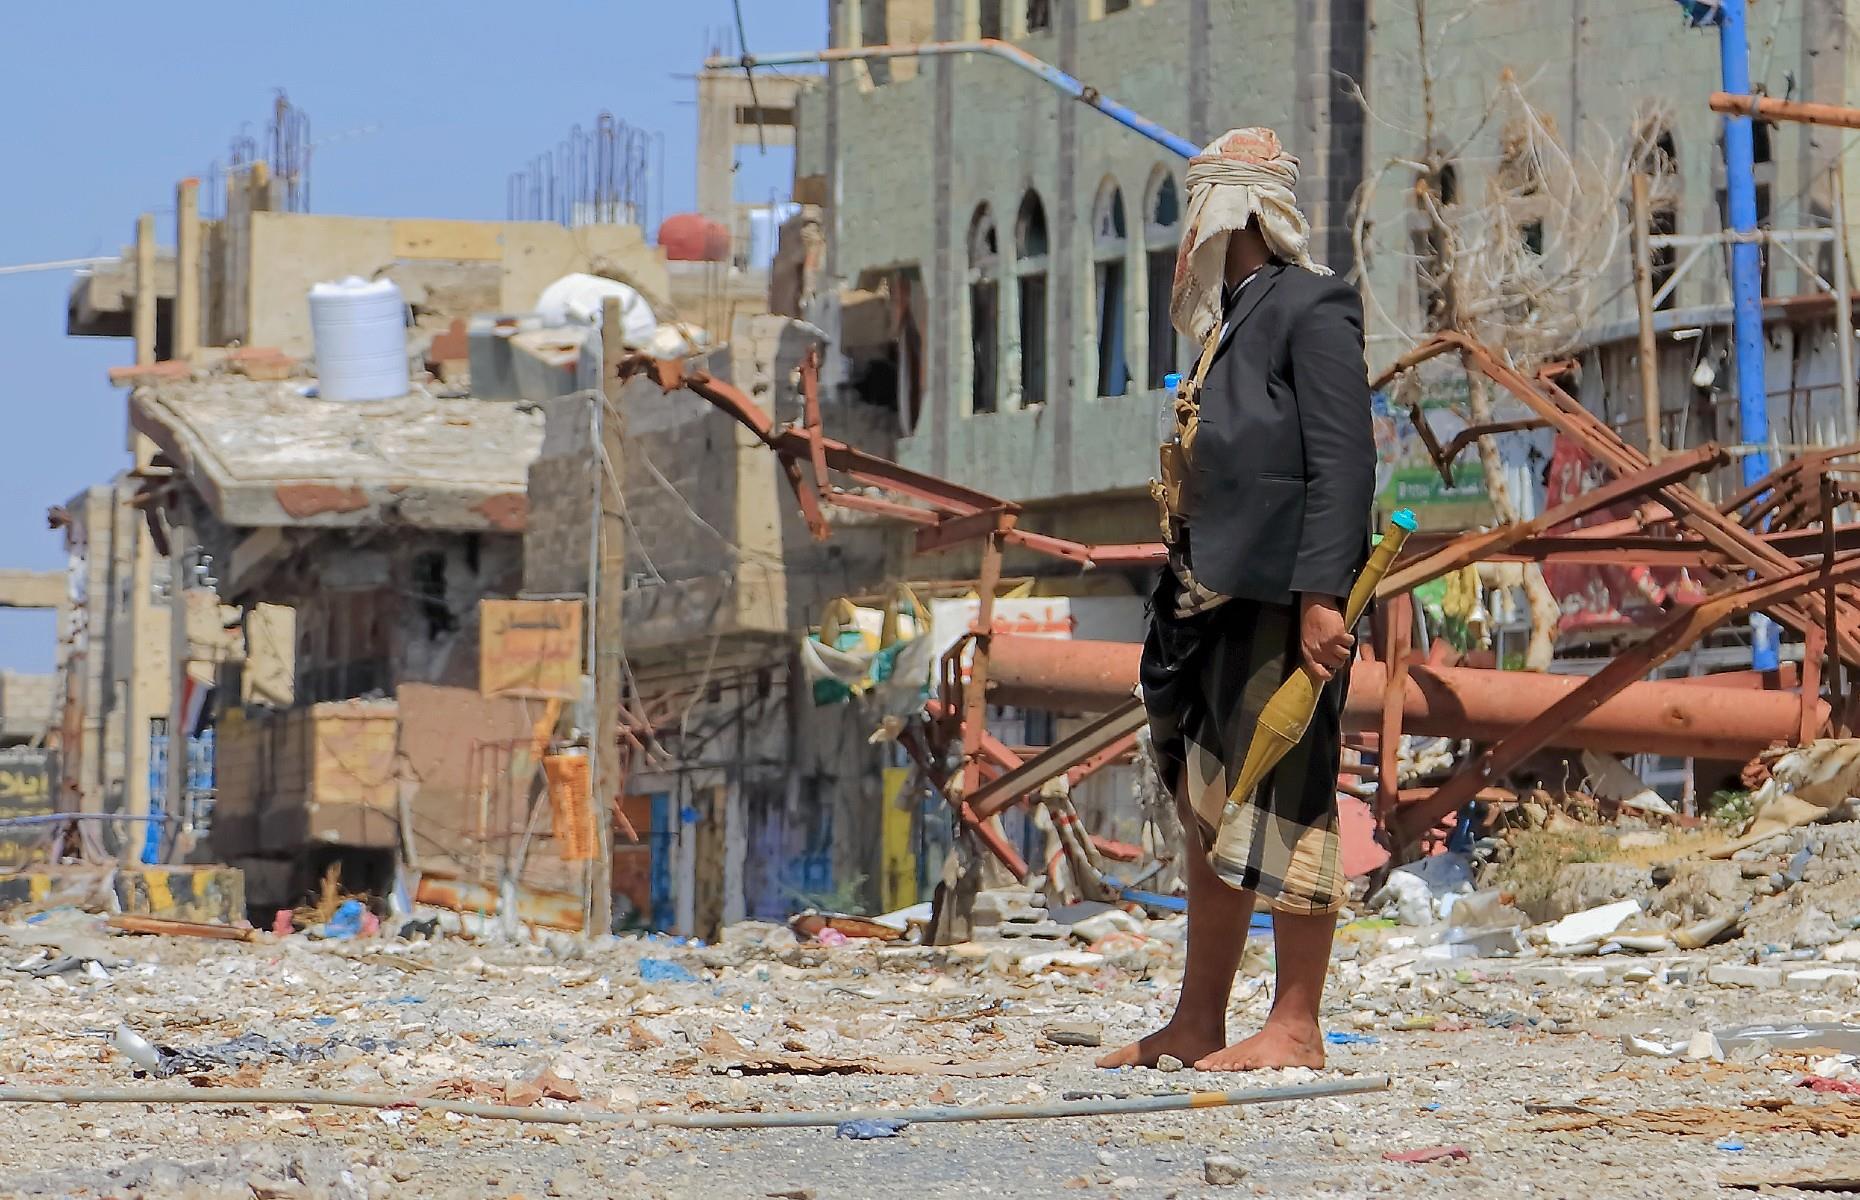 12th. Yemen: 81.08% of GDP